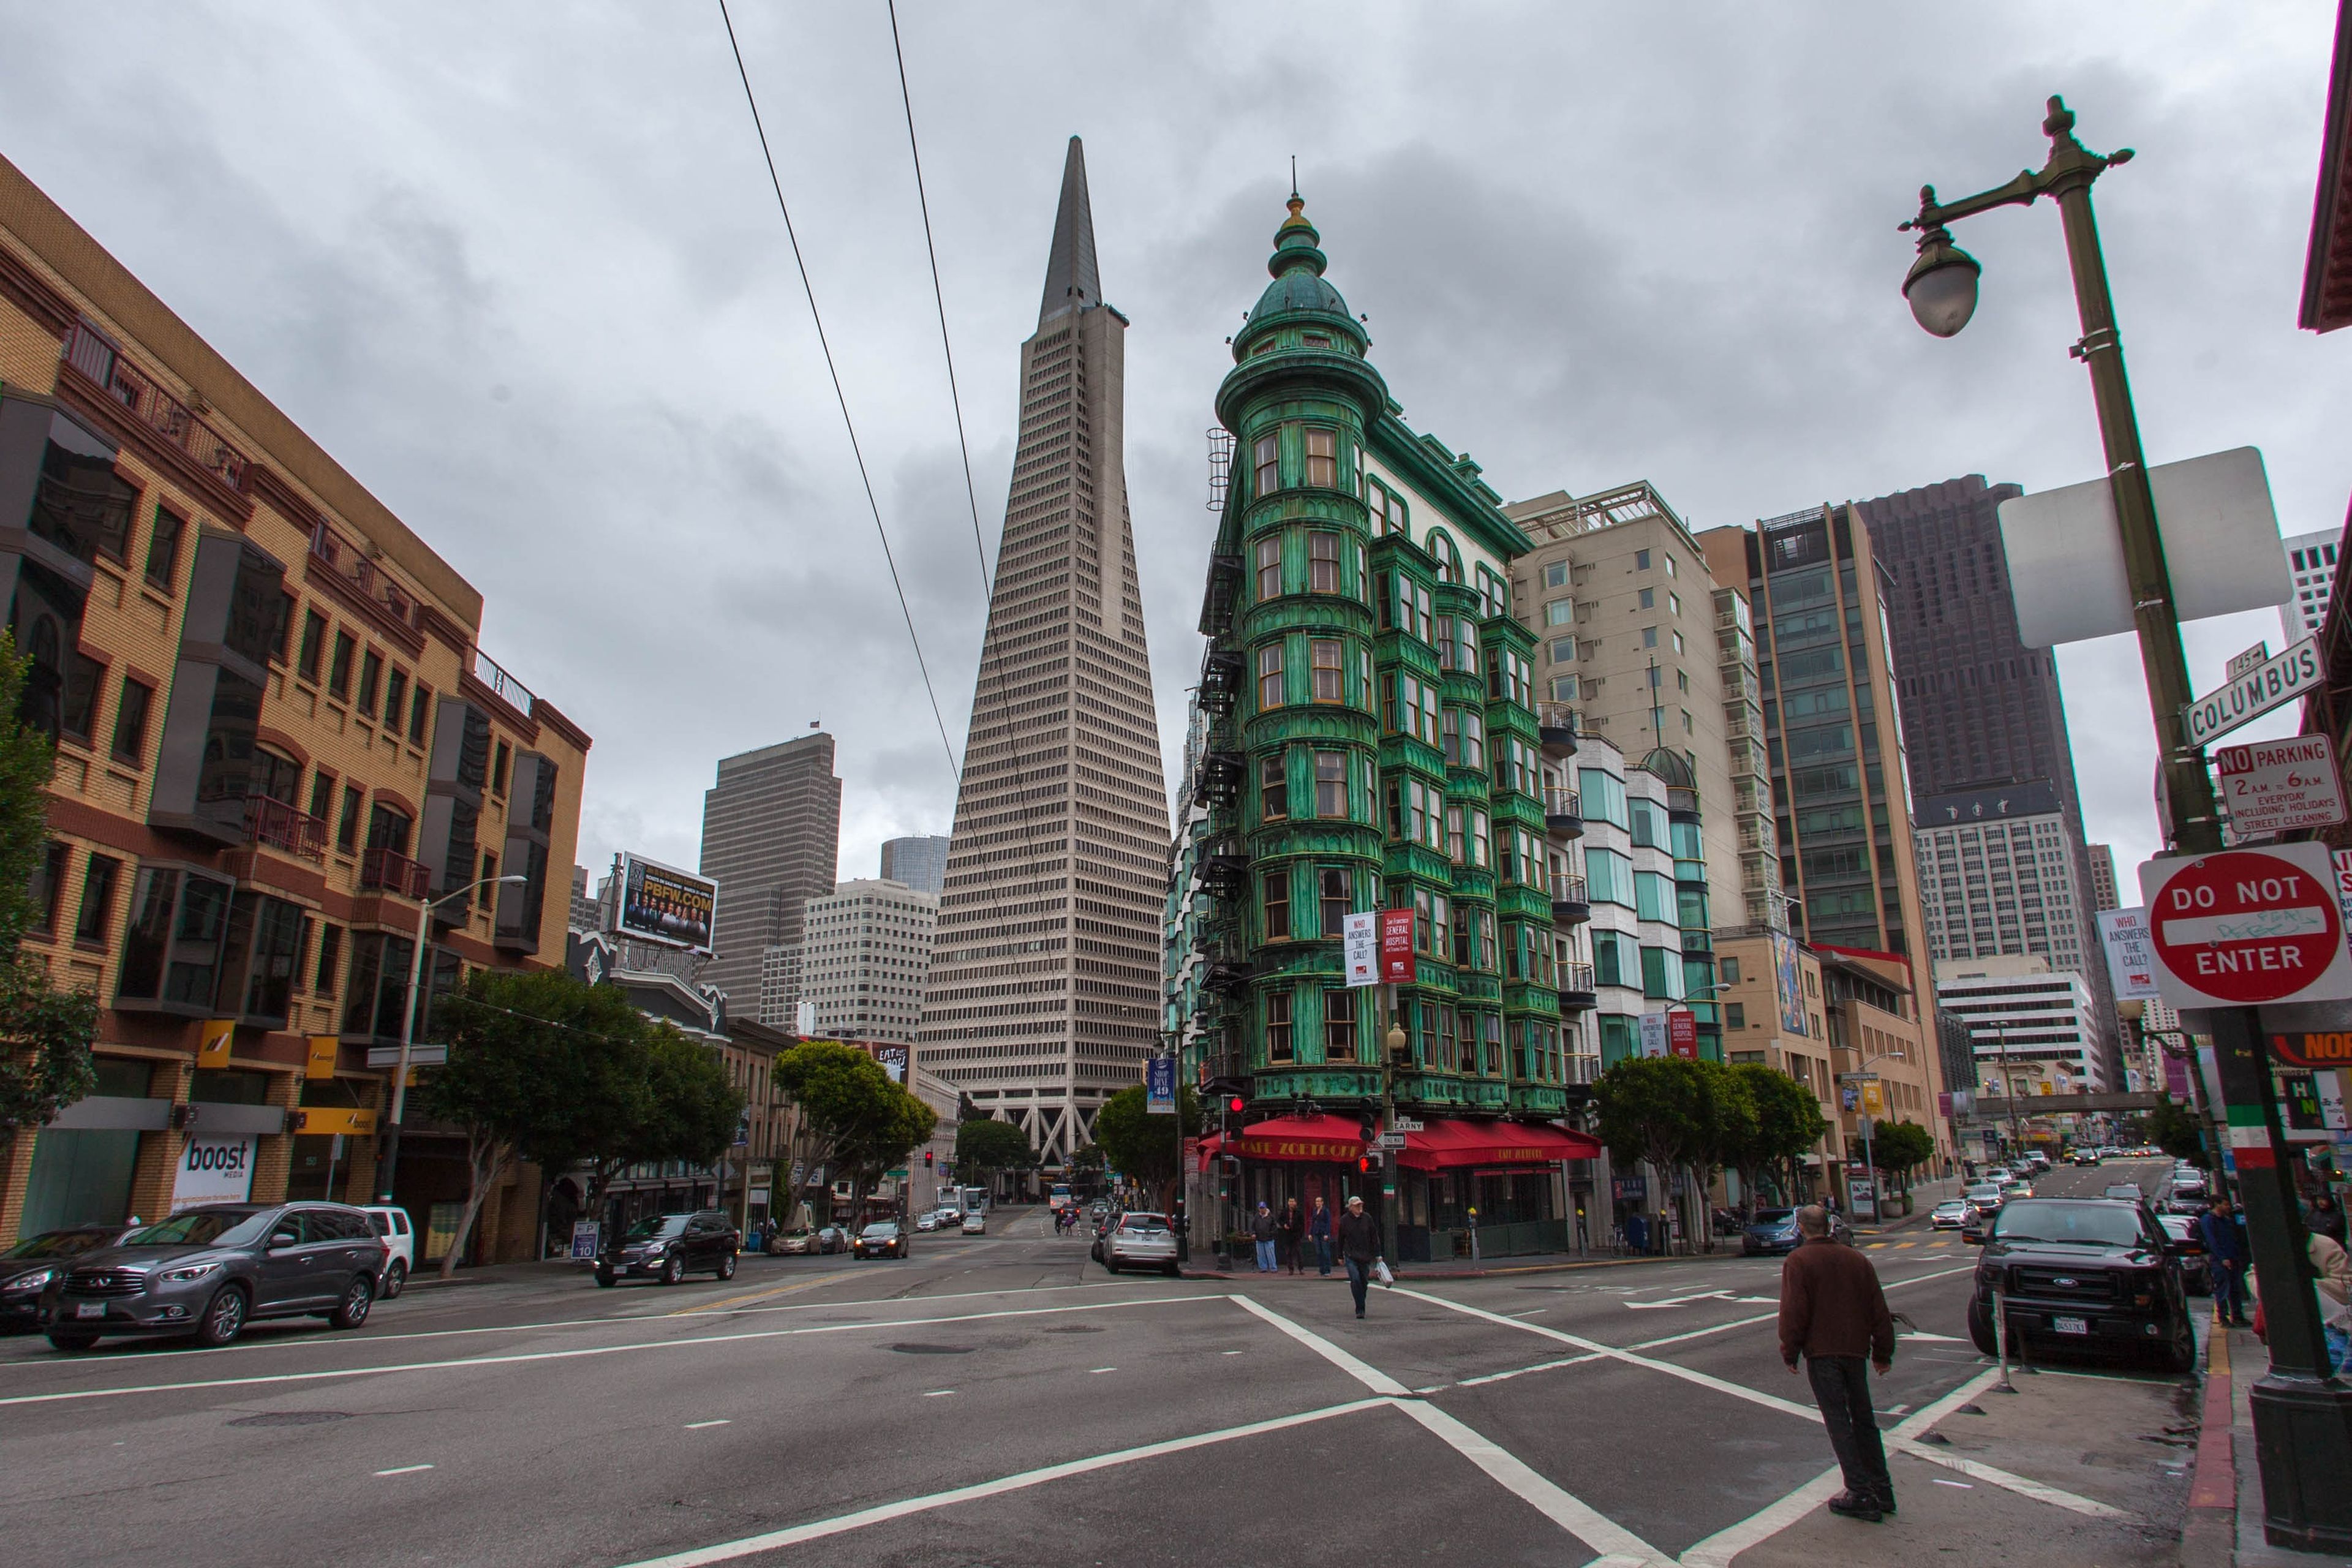 Aparcar en el centro de San Francisco cuesta casi 10 euros la hora